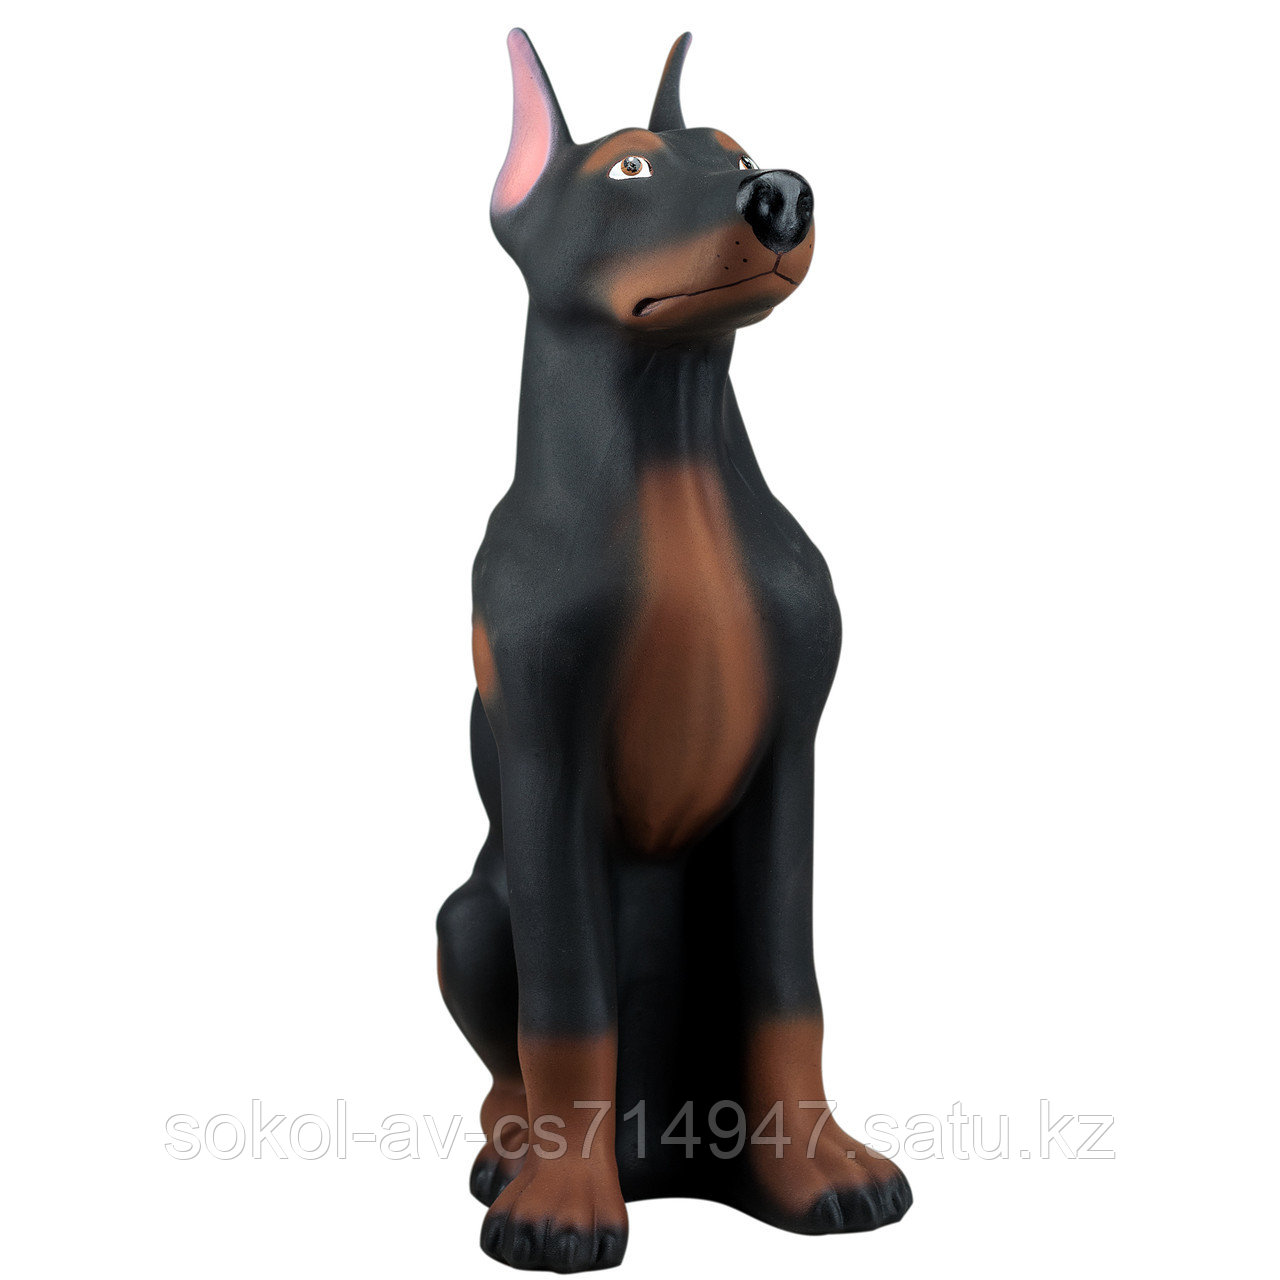 Копилка / статуэтка, керамическая собака Доберман, 43*26*16 см